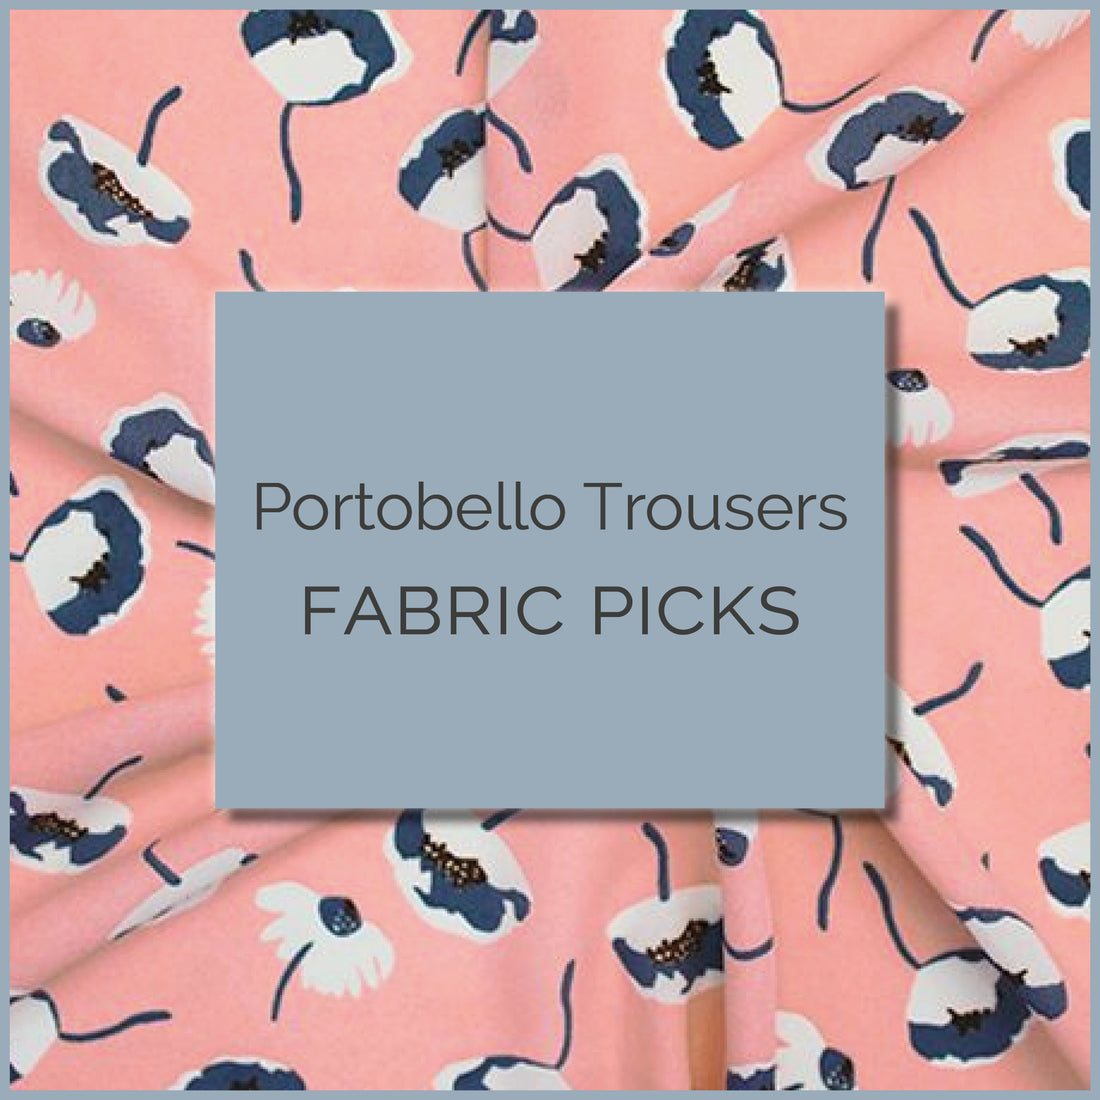 Portobello Trouser fabric picks blog header